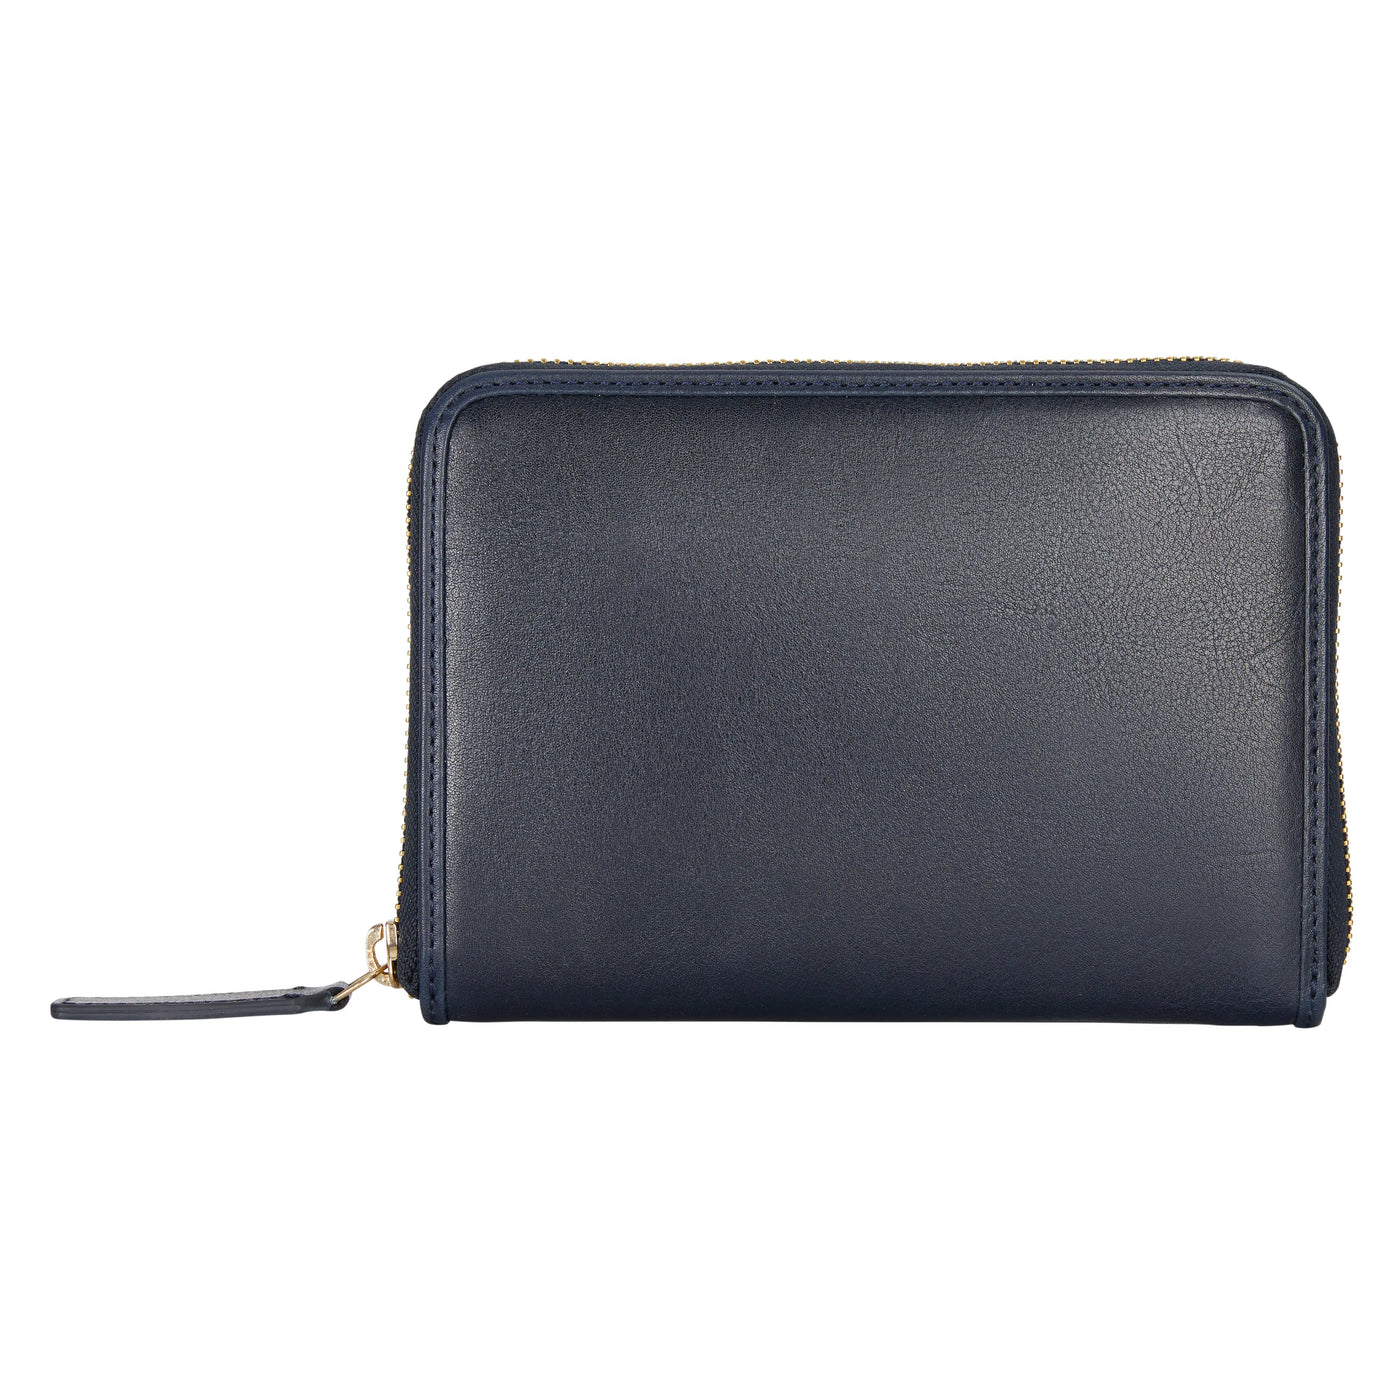 Indigo Leather Wallet dark blue